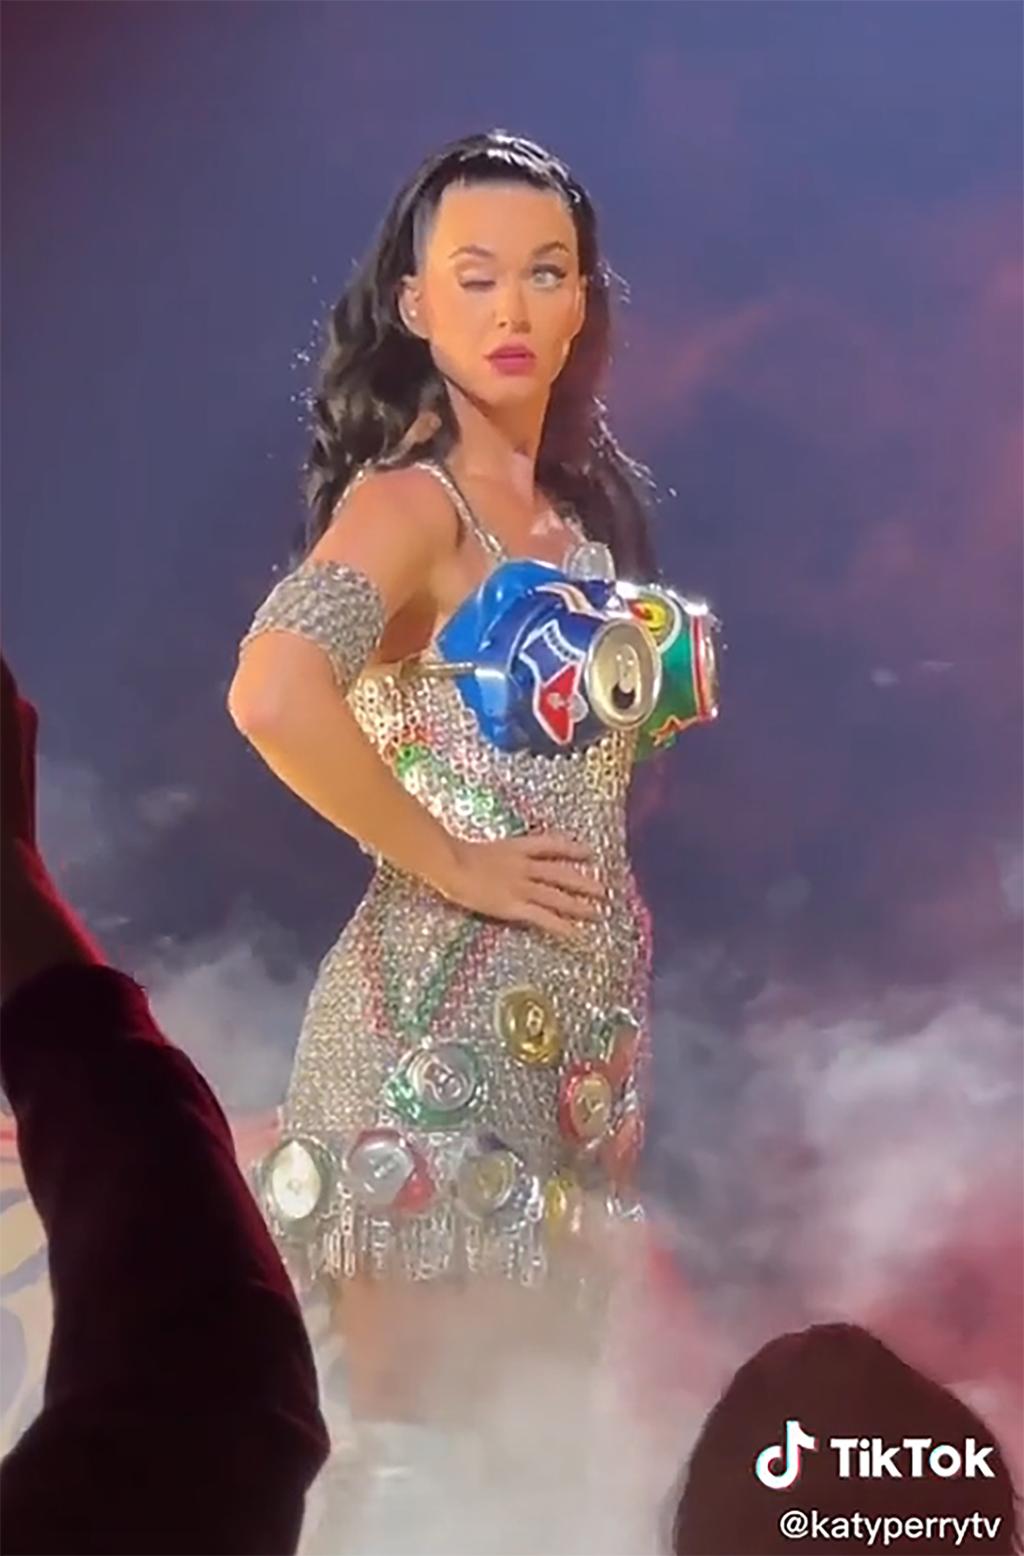 Le « pépin » de Katy Perry au milieu du concert rend les fans fous